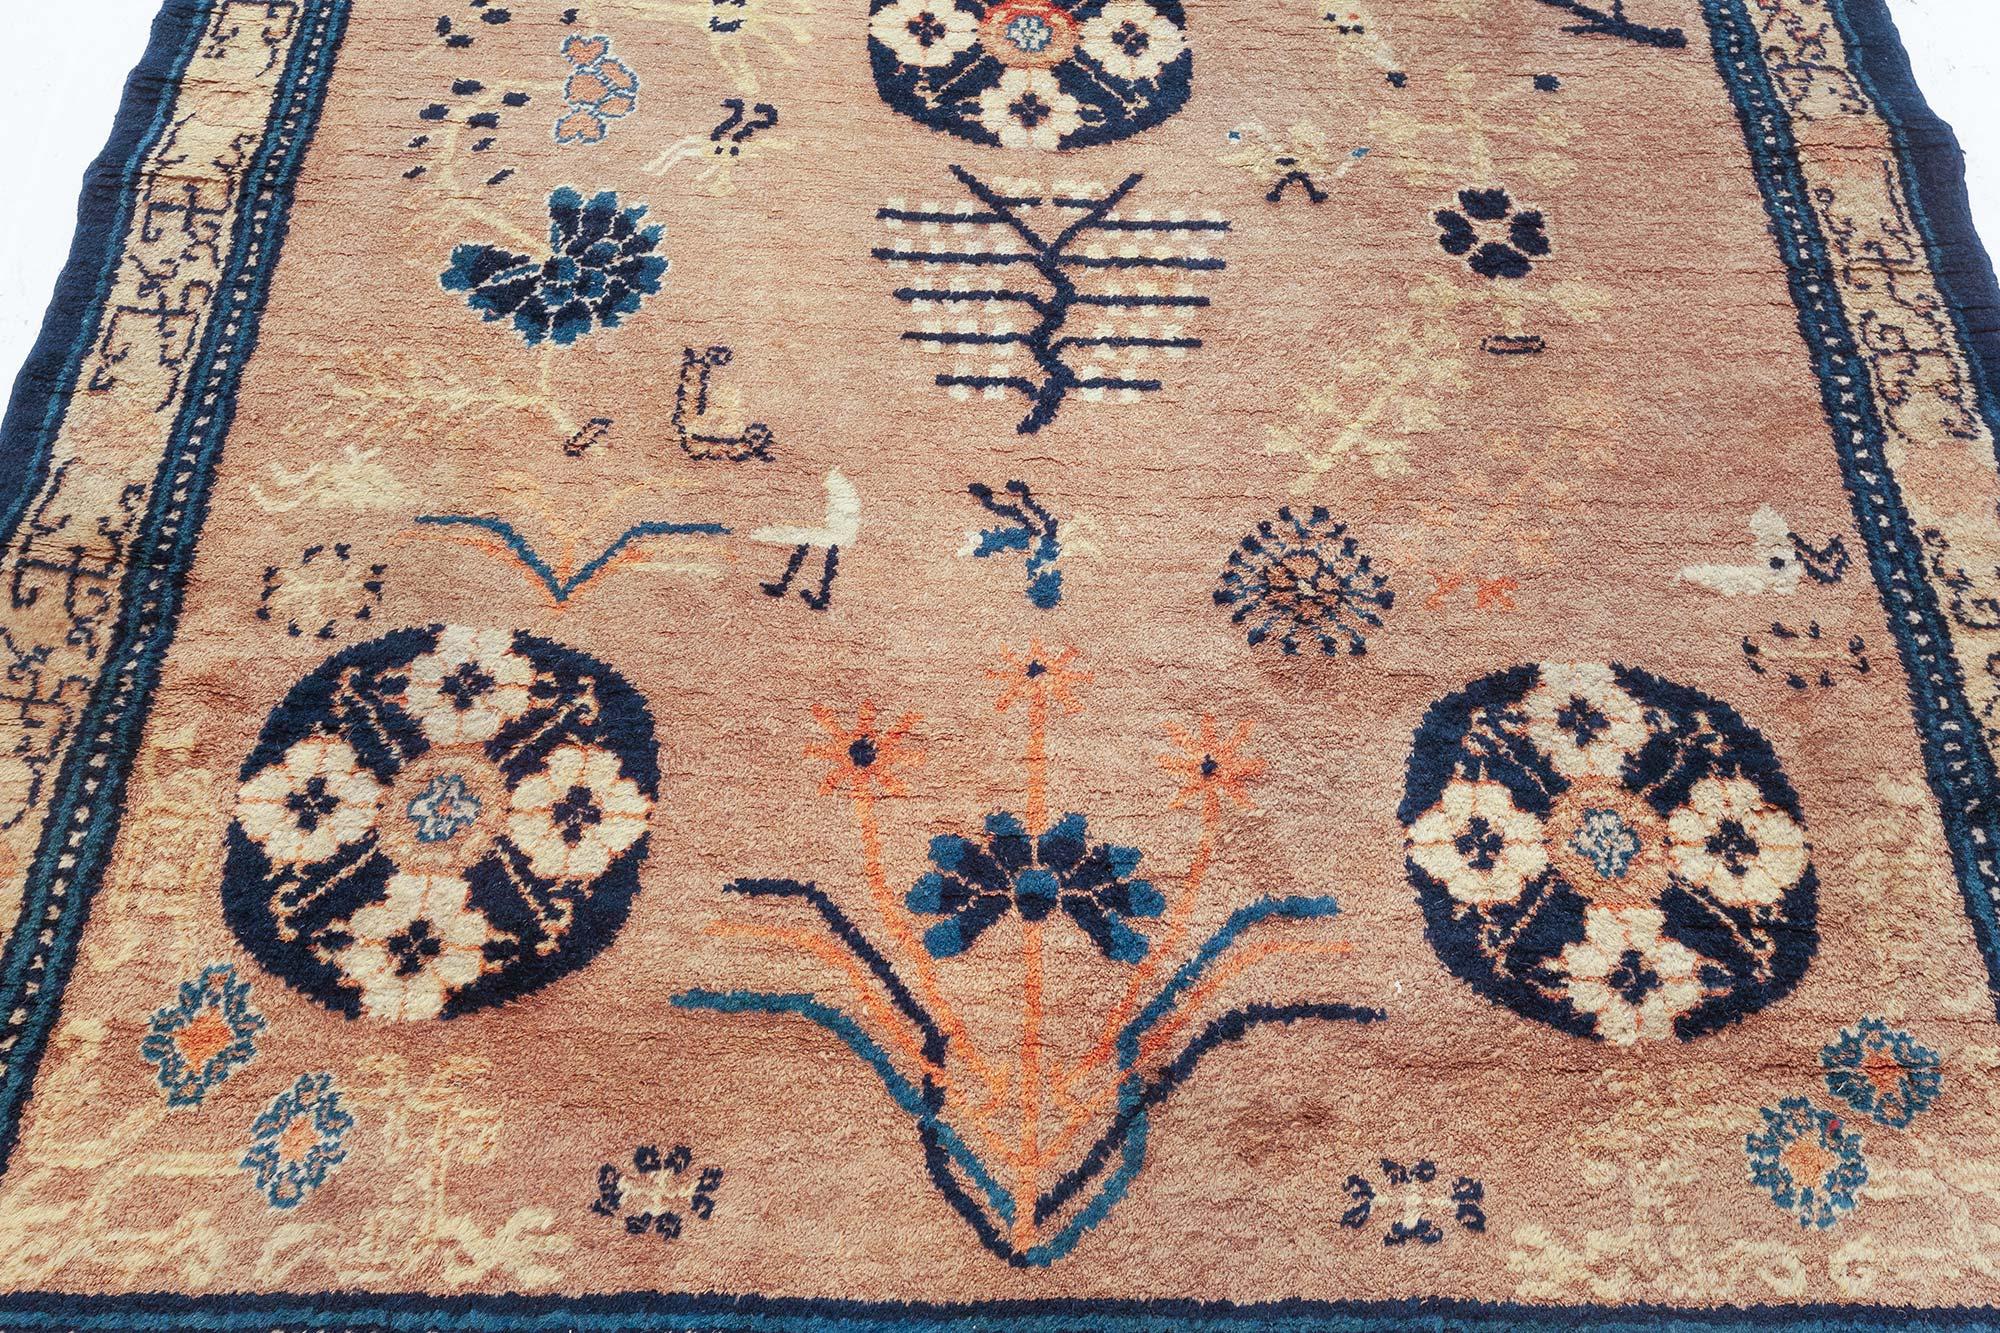 Samarkand-Teppich aus der Jahrhundertmitte, marineblau und beige, handgefertigt aus Wolle.
Größe: 4'0